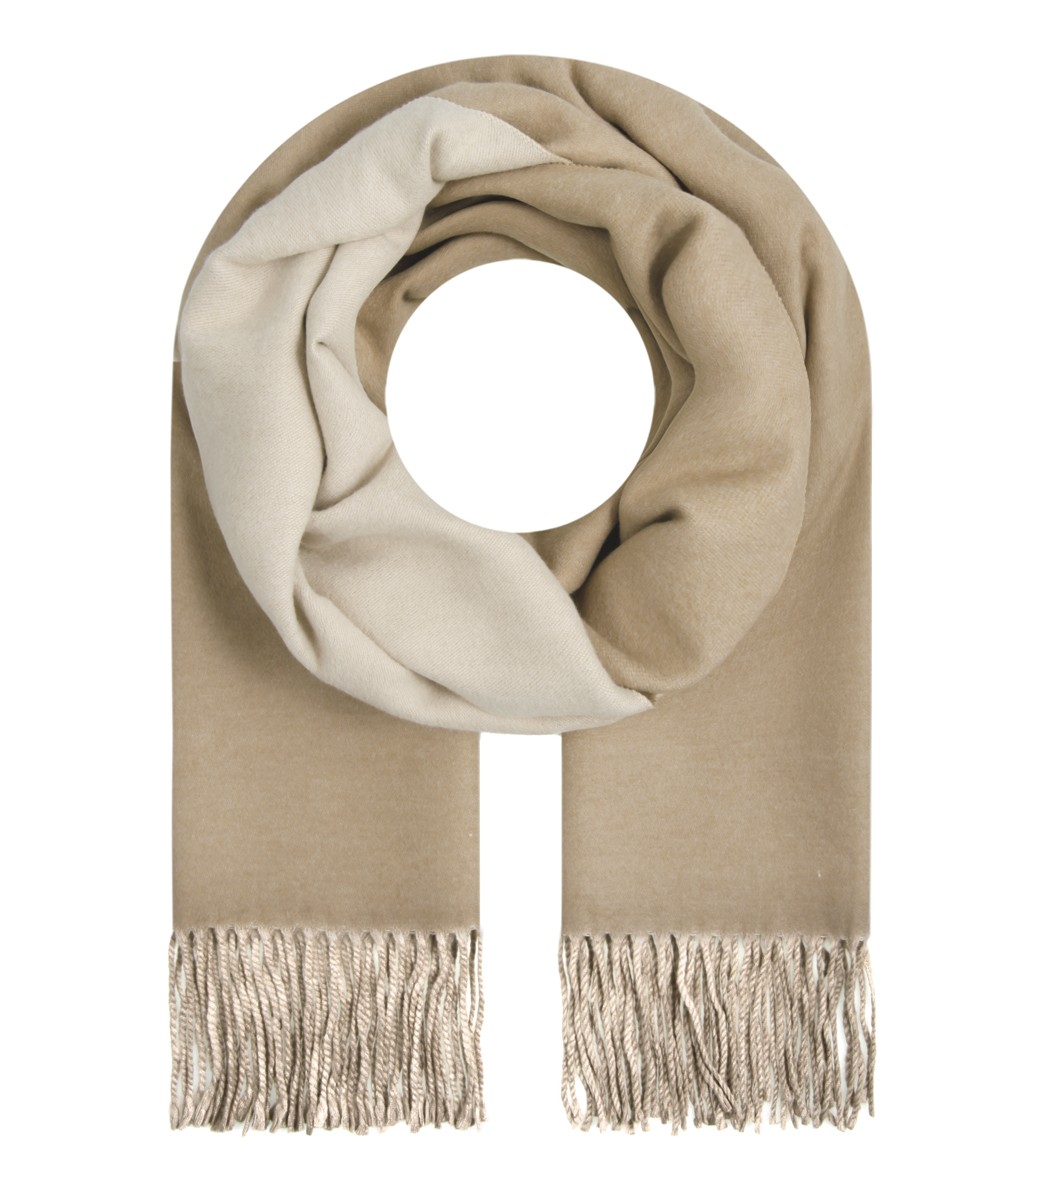 Damen Schal - Zweifarbig, Fransen, beige FASHIONHALL24.DE | Dein Tücher,  Schal & Accessoires Online Shop im Internet